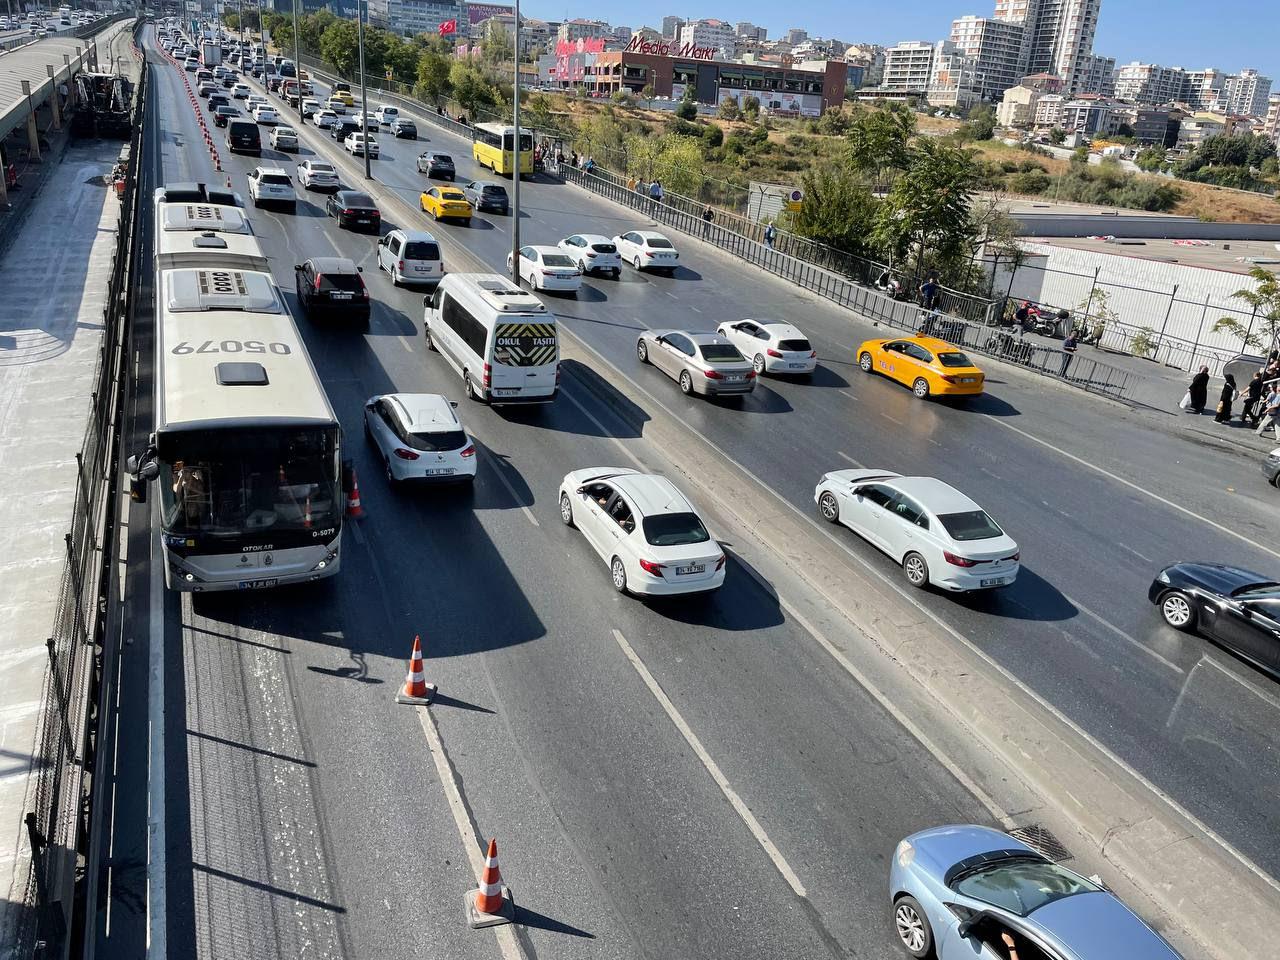 İstanbul'da metrobüs yolundaki bakım nedeniyle trafikte yoğunluk yaşanıyor